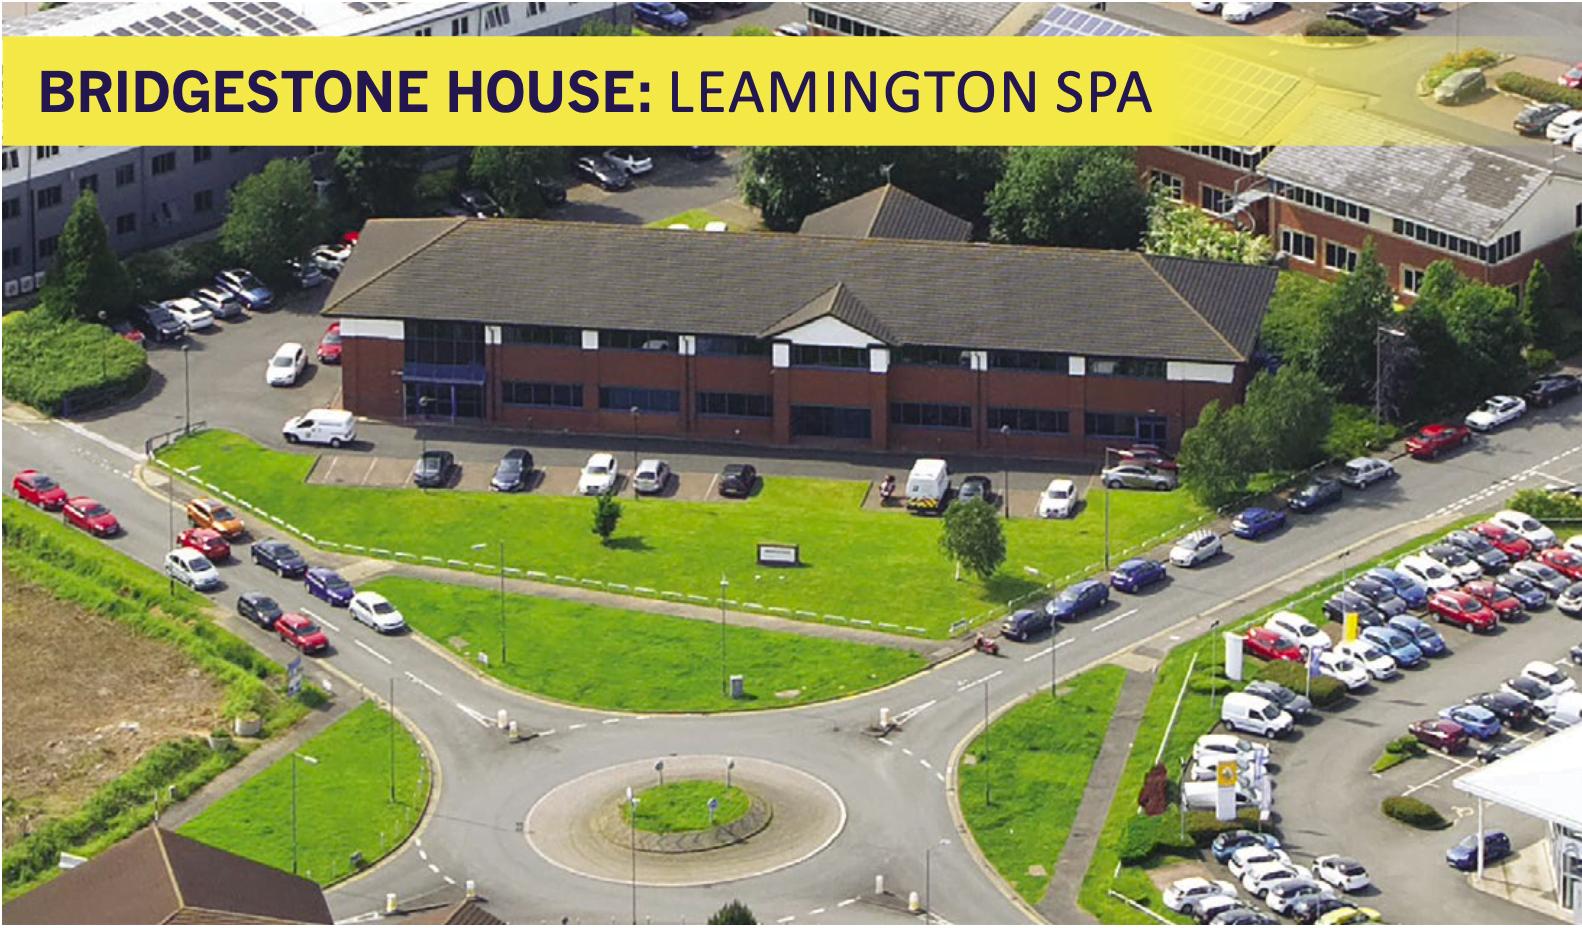 Bridgestone House: Leamington Spa